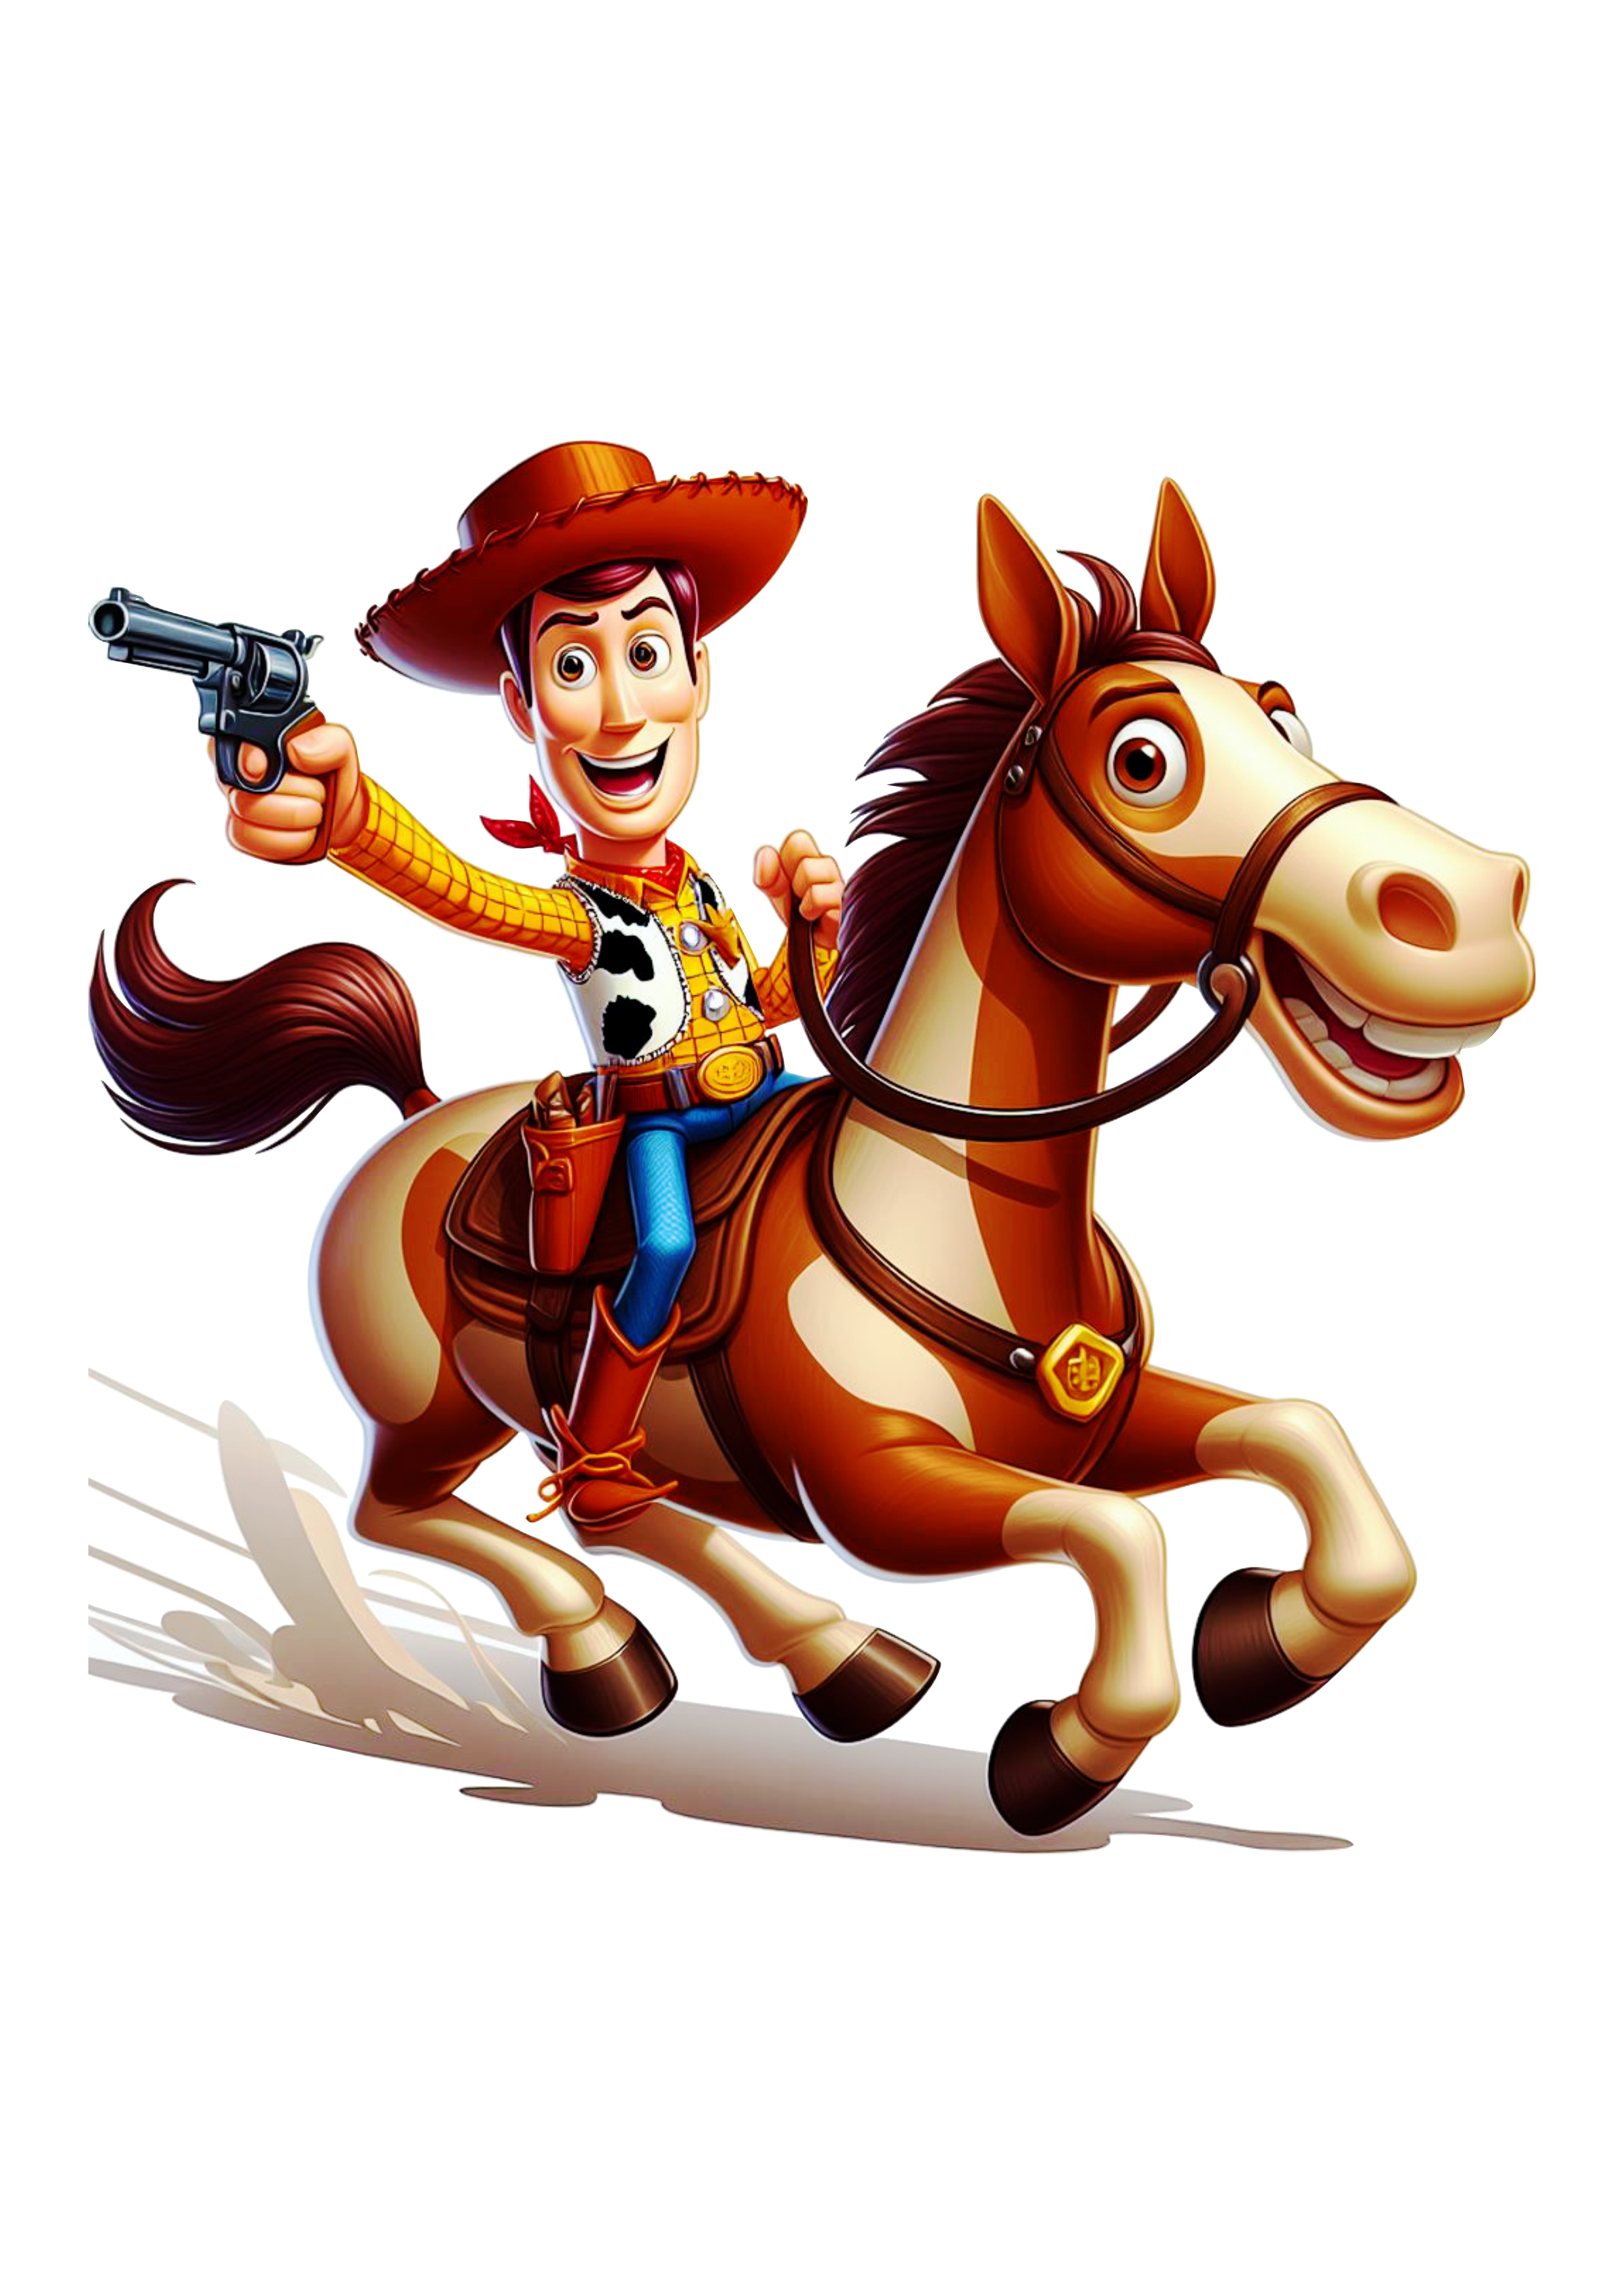 Xerife Woody montado no cavalo Toy Story animação infantil Disney png image